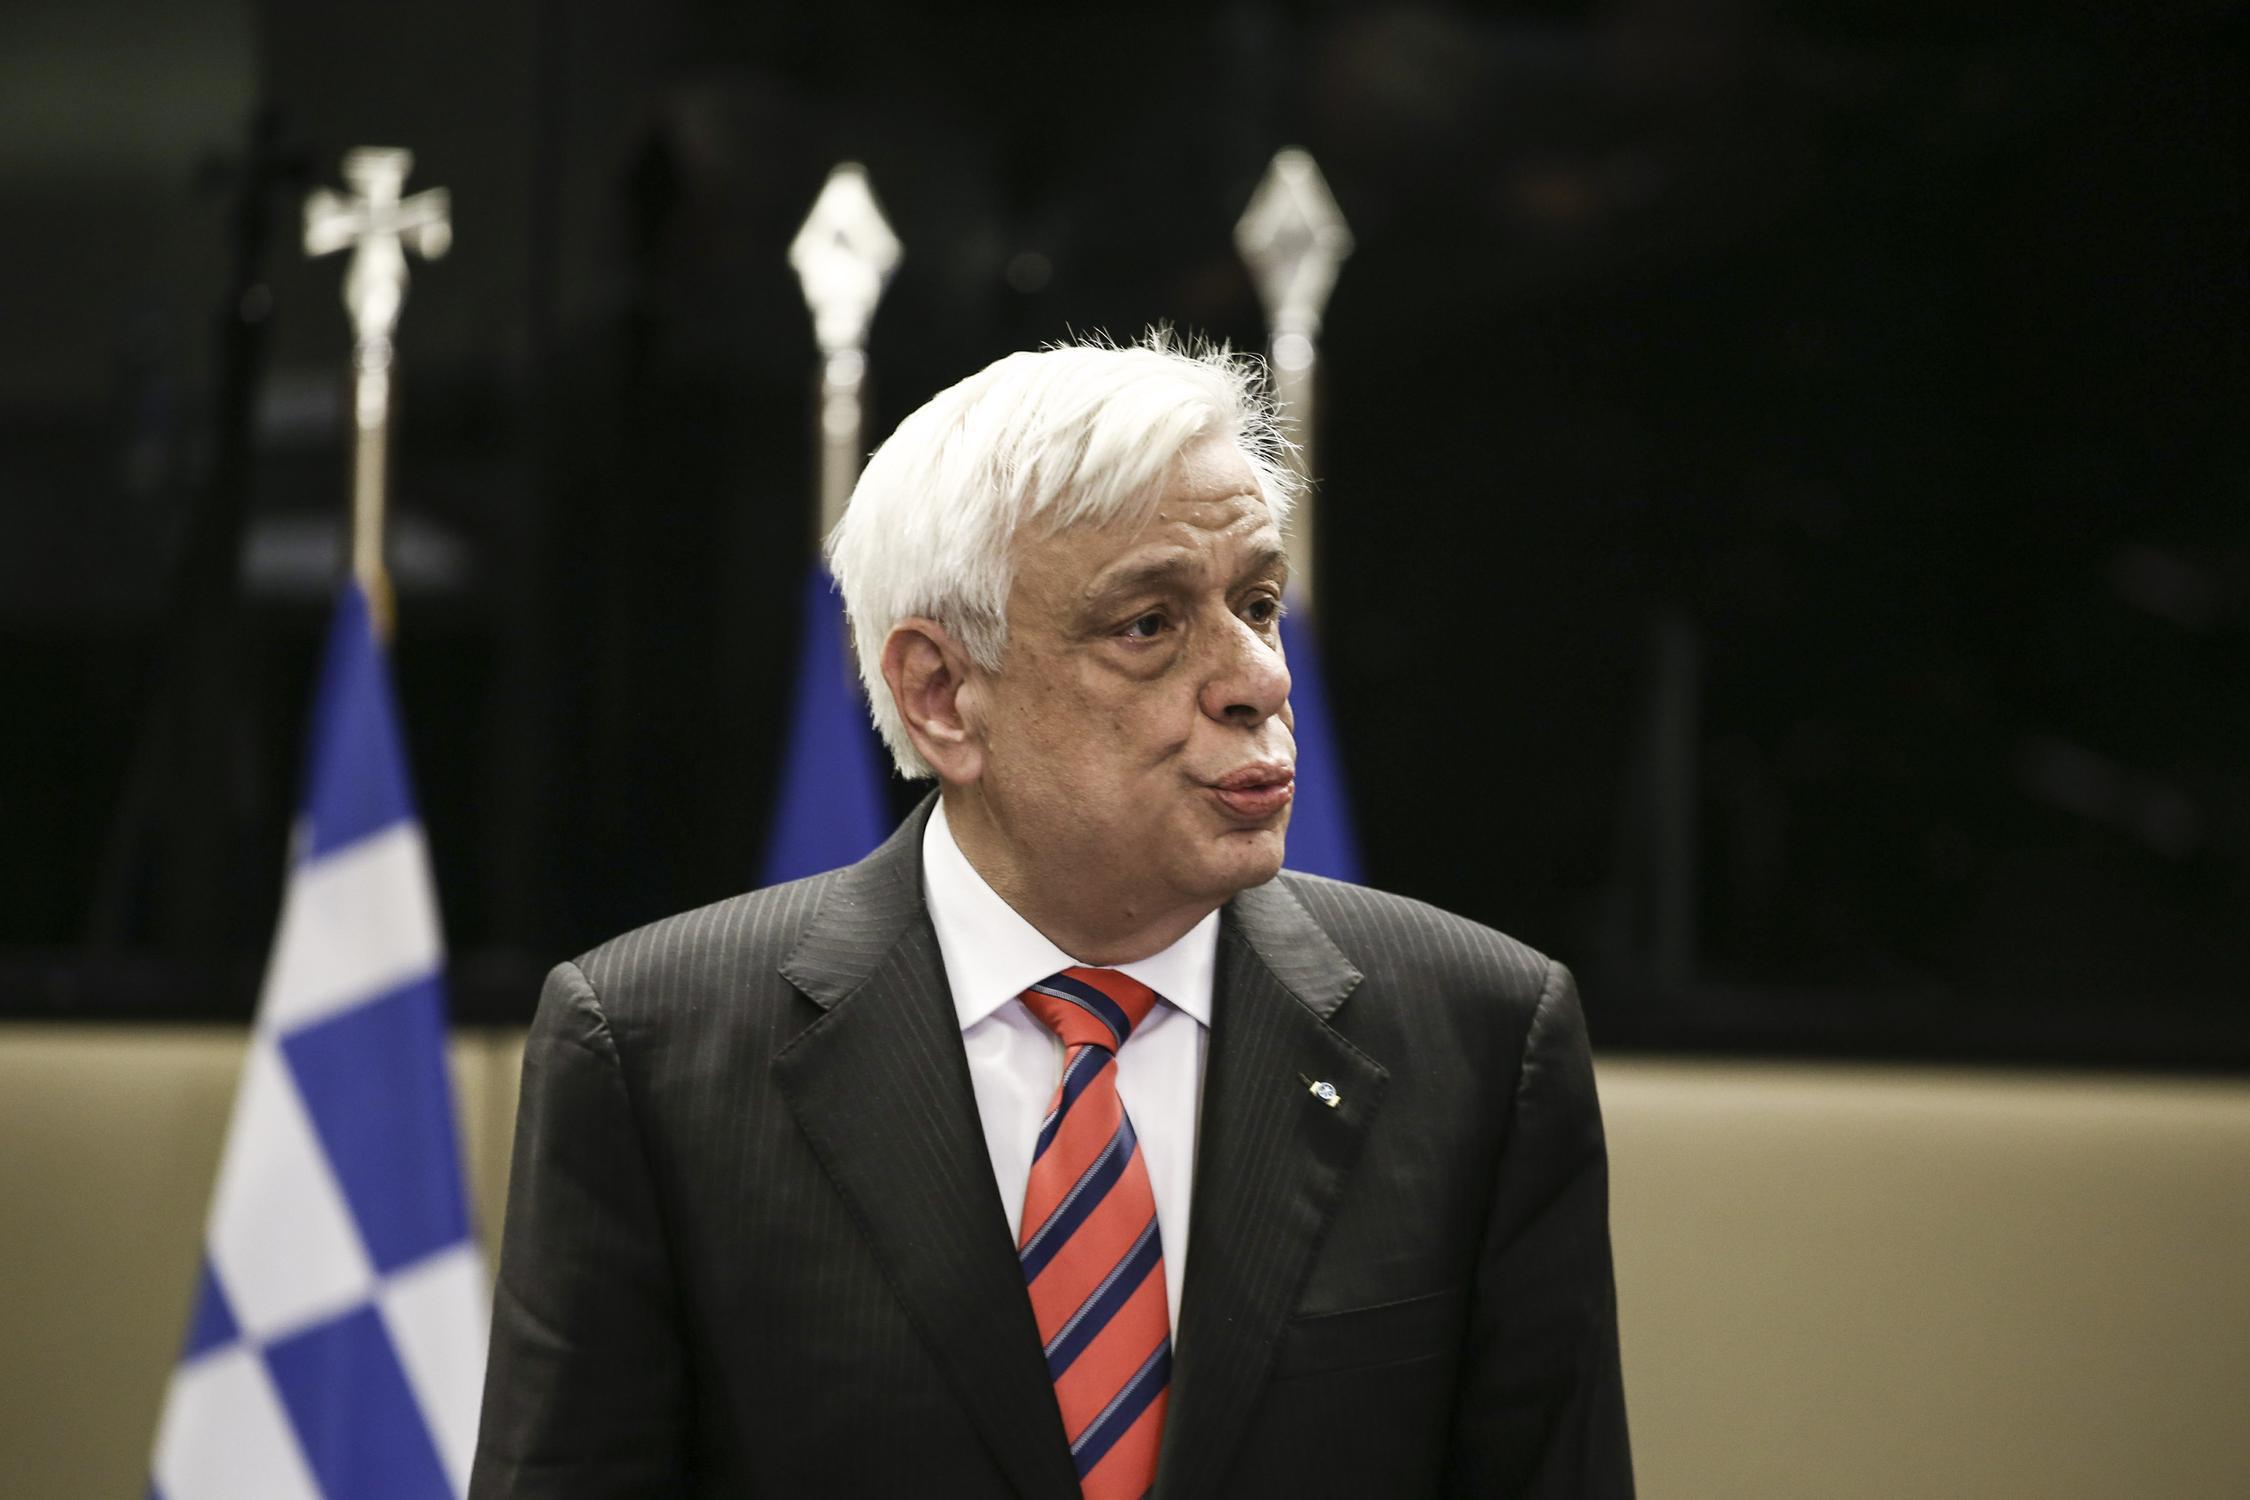 Προκόπης Παυλόπουλος: Οι απαιτήσεις της Ελλάδας κατά της Γερμανίας είναι πάντοτε νομικώς ενεργές και δικαστικώς επιδιώξιμες